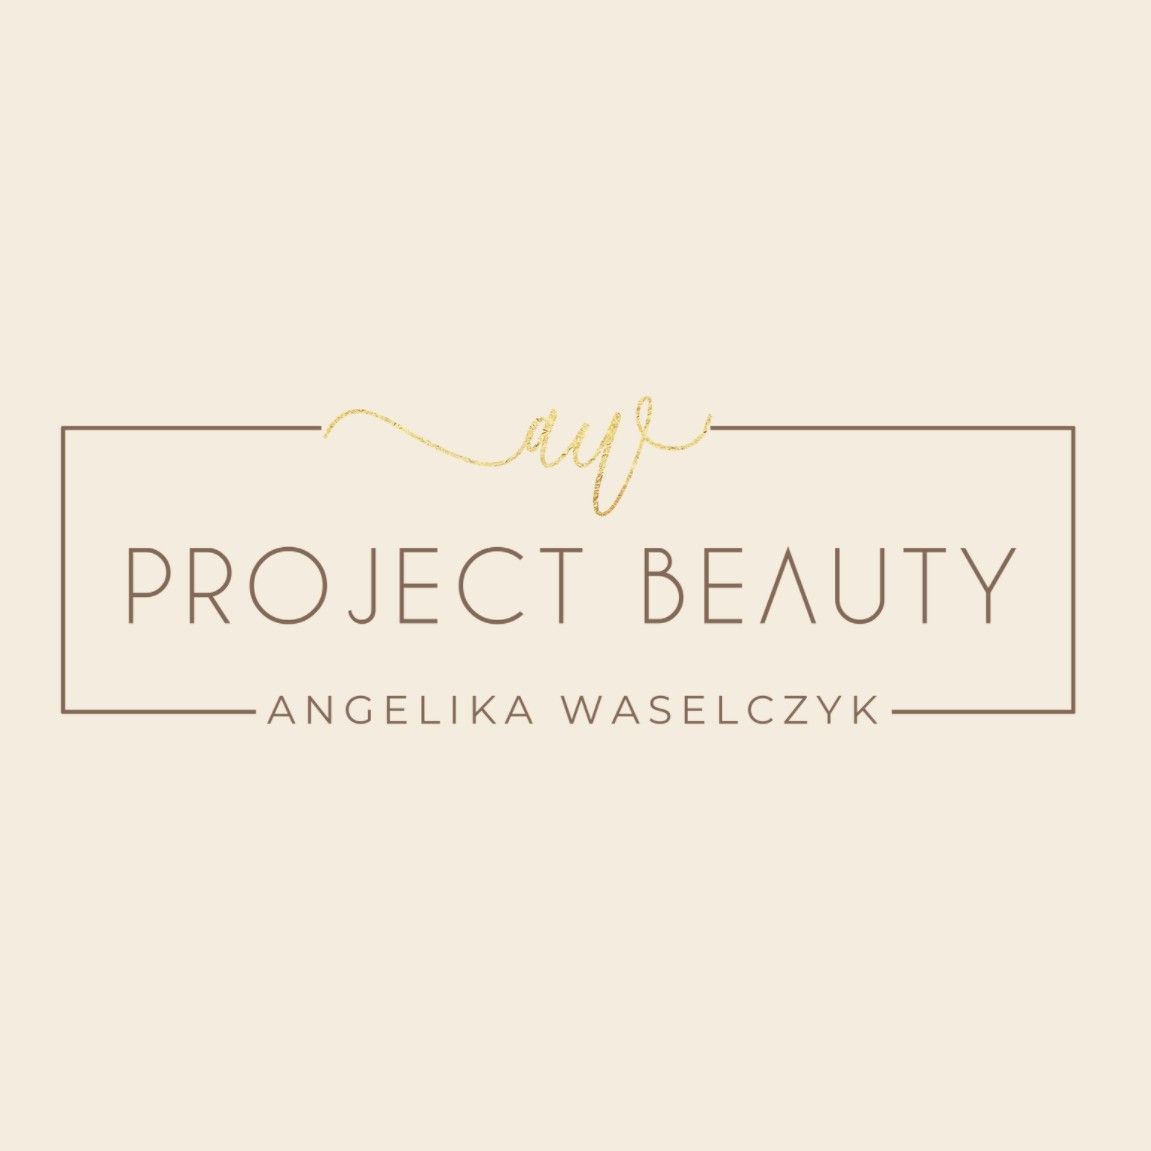 Project Beauty Angelika Waselczyk, Siewna, 21/ M1, 61-692, Poznań, Stare Miasto